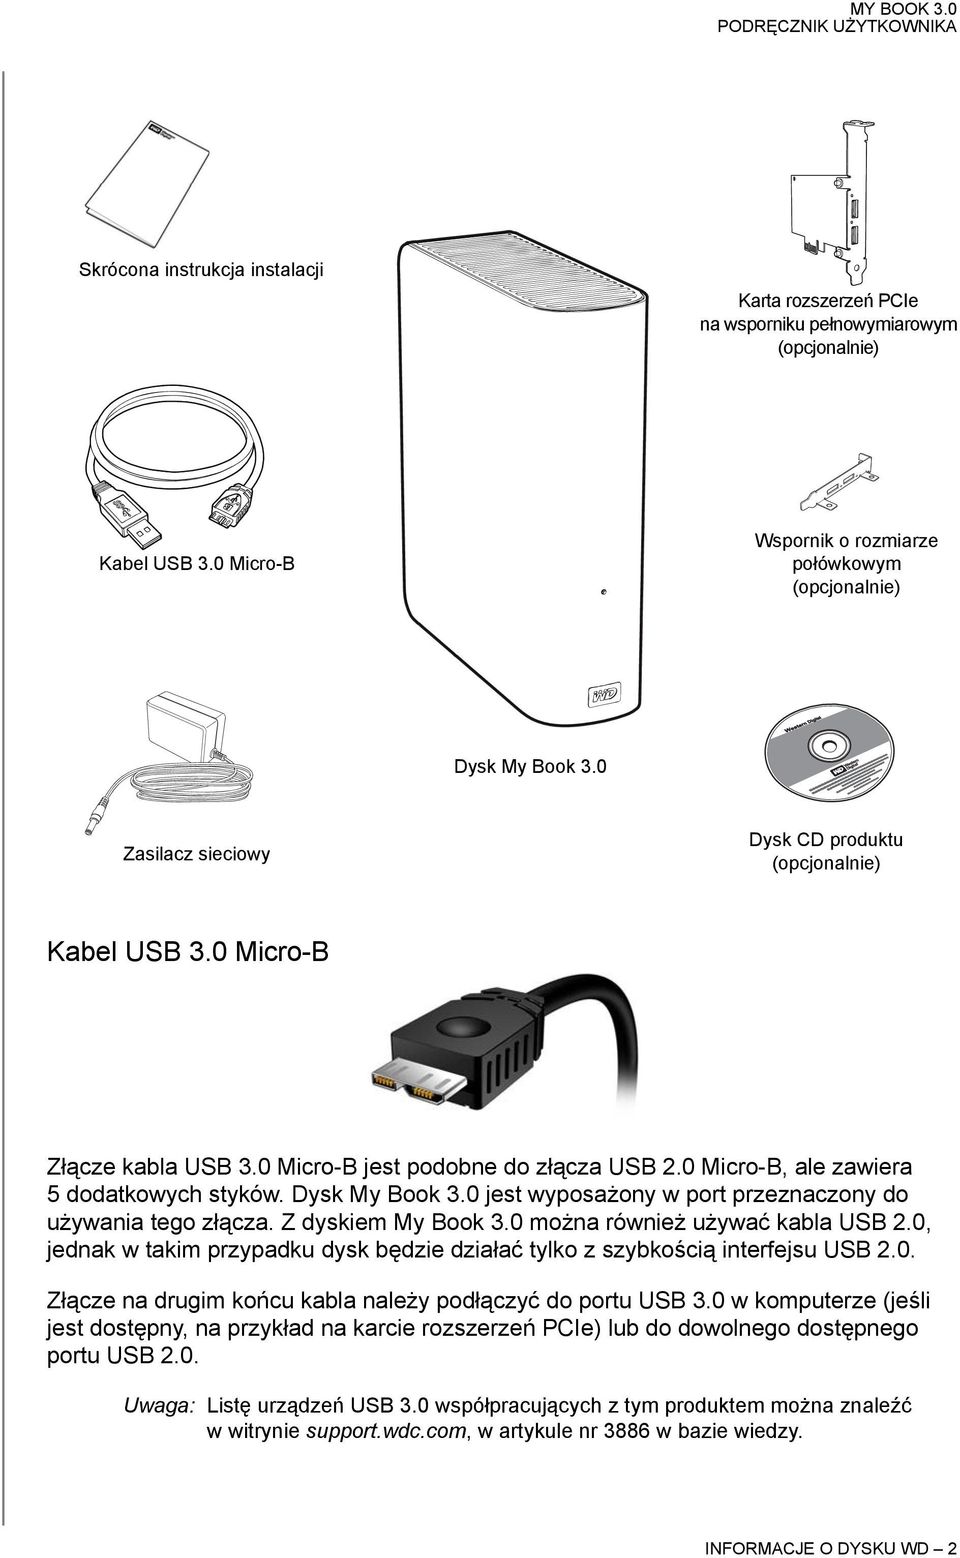 0 jest wyposażony w port przeznaczony do używania tego złącza. Z dyskiem My Book 3.0 można również używać kabla USB 2.